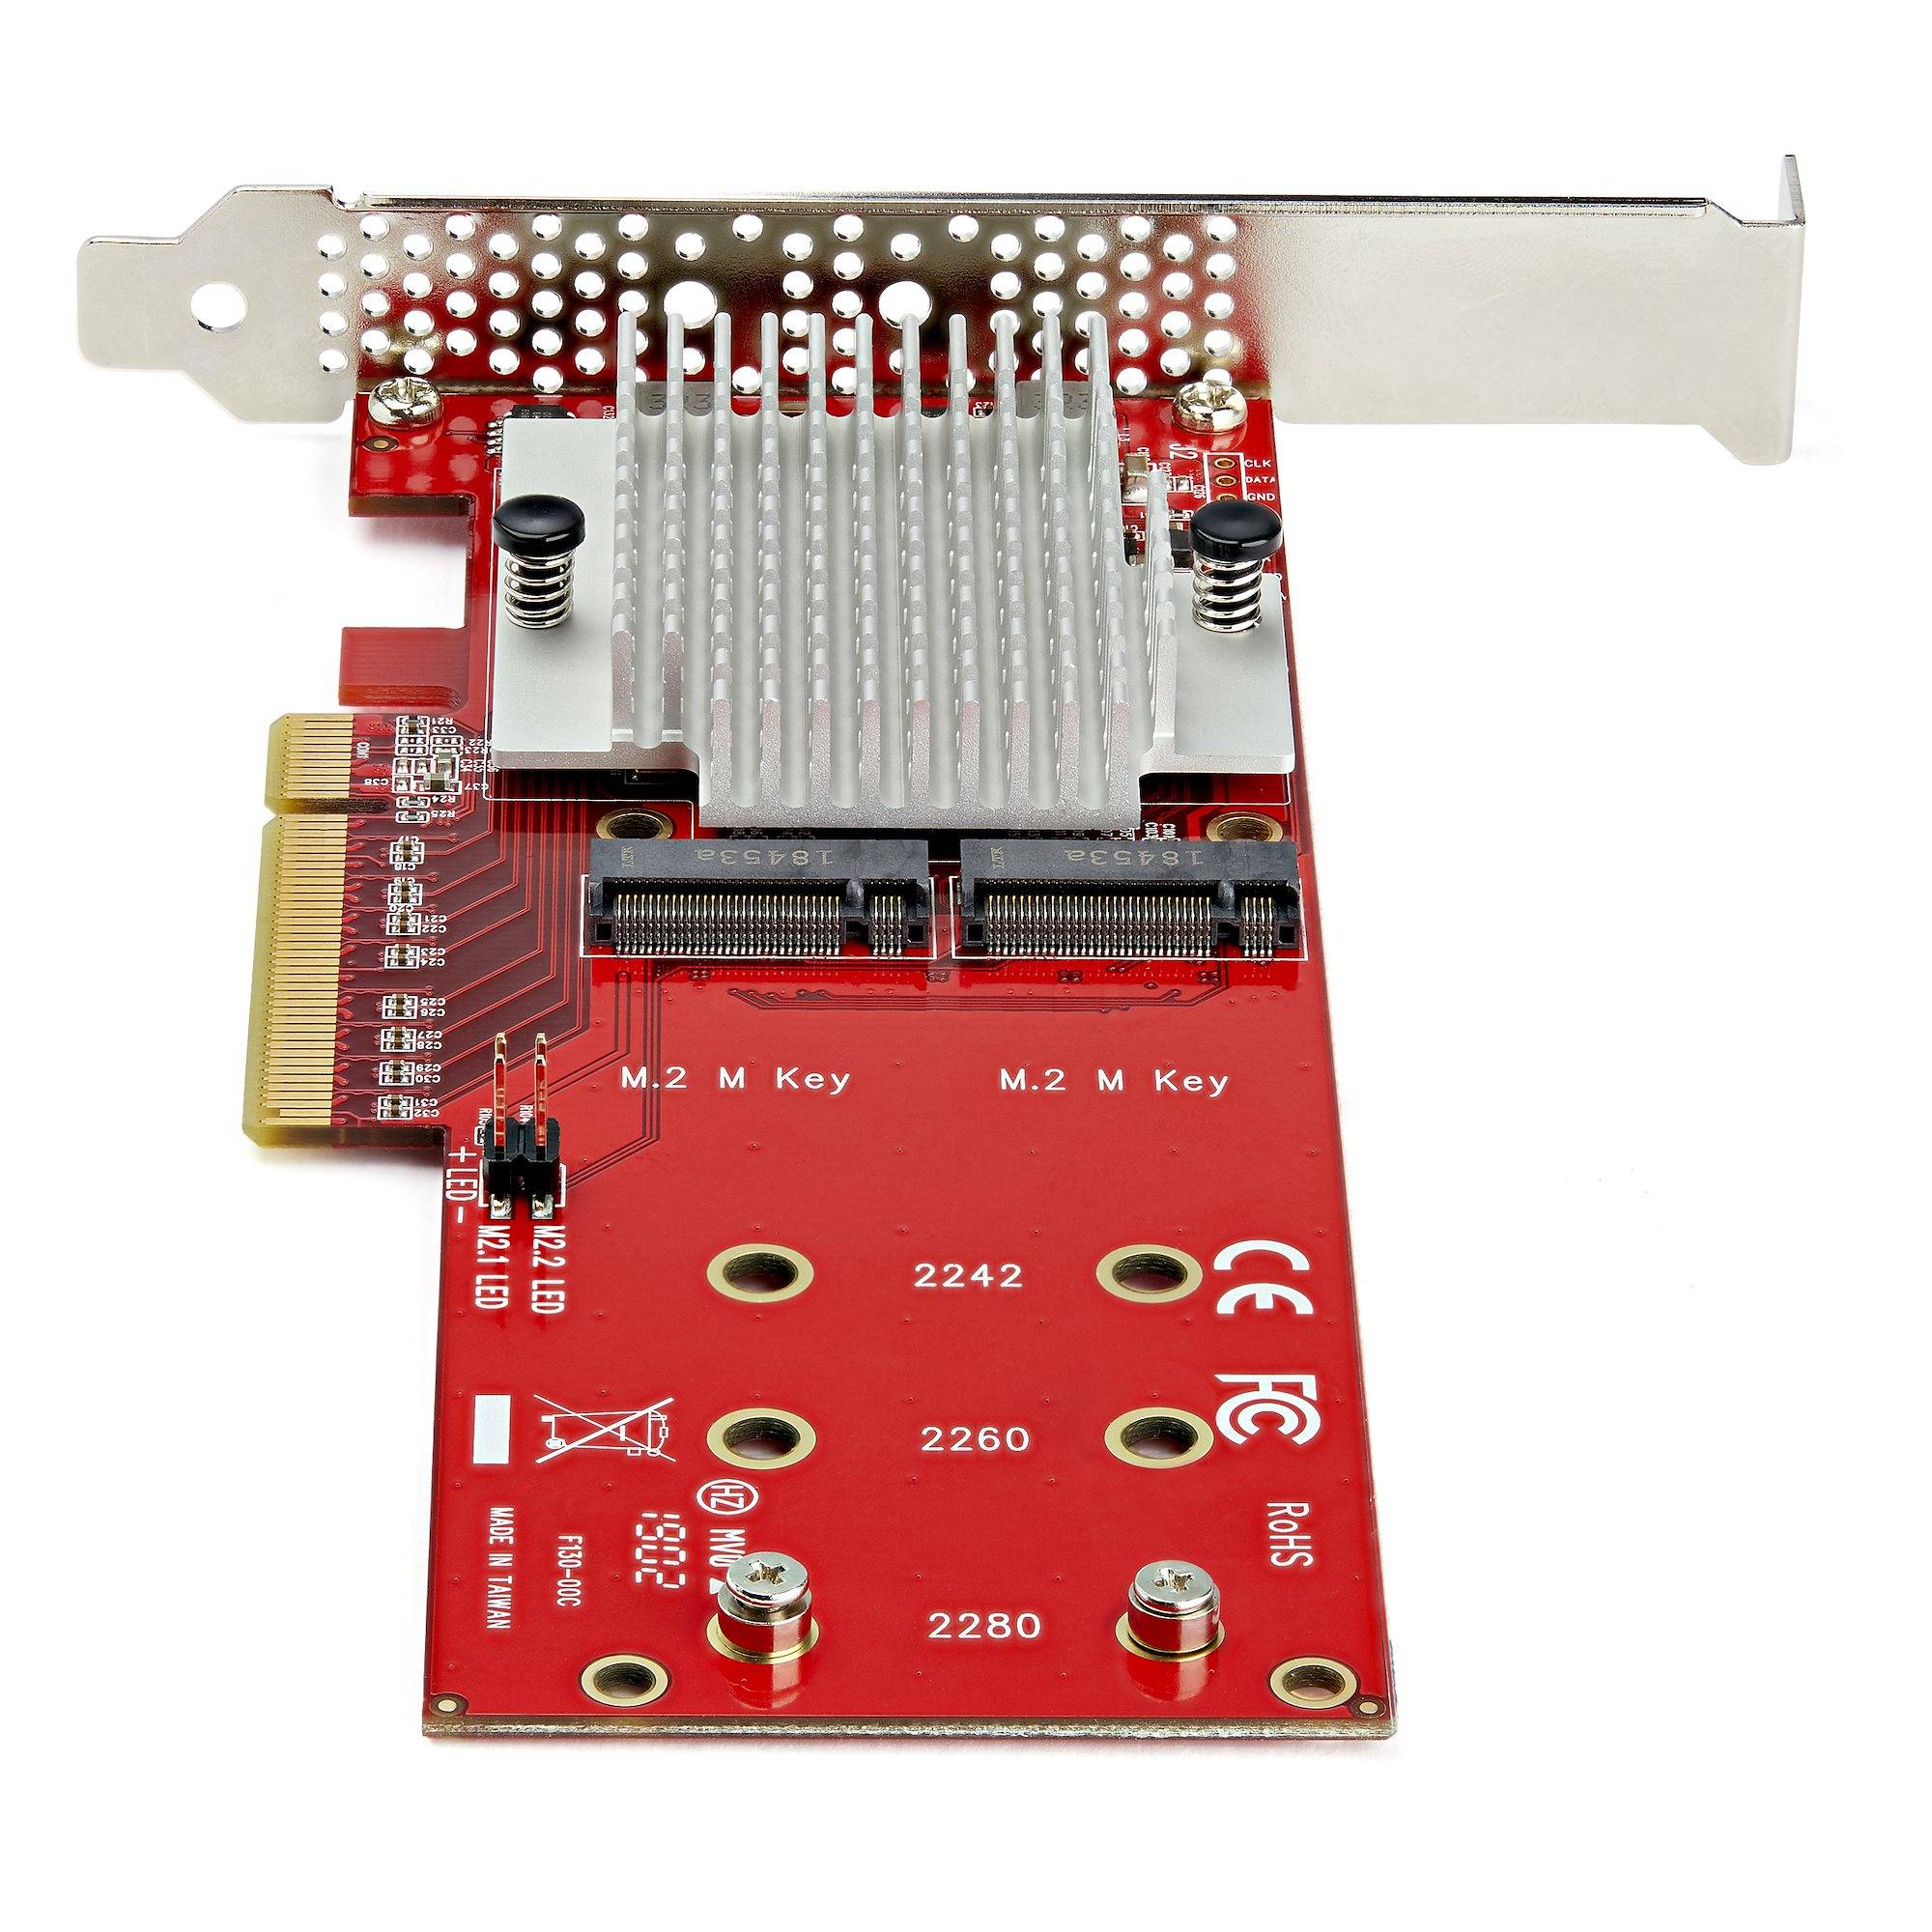 Rca Informatique - image du produit : X8 DUAL M.2 PCIE SSD ADAPTER FOR PCIE NVME / AHCI M.2 SSDS